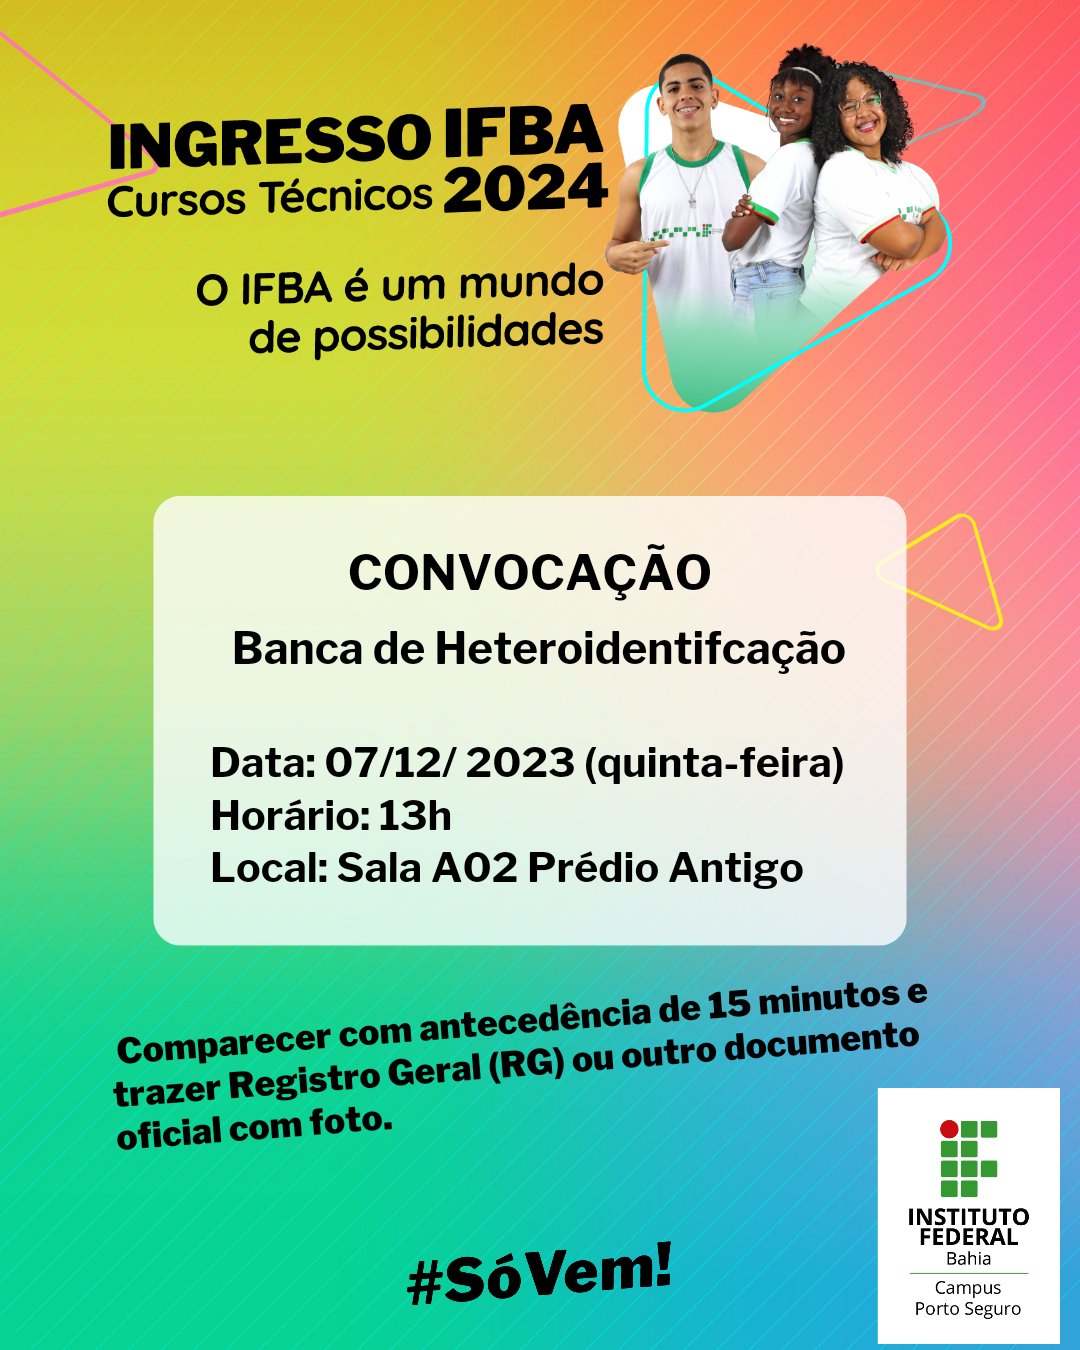 Abertas inscrições do processo seletivo 2020 para cursos técnicos do IFBA, Bahia